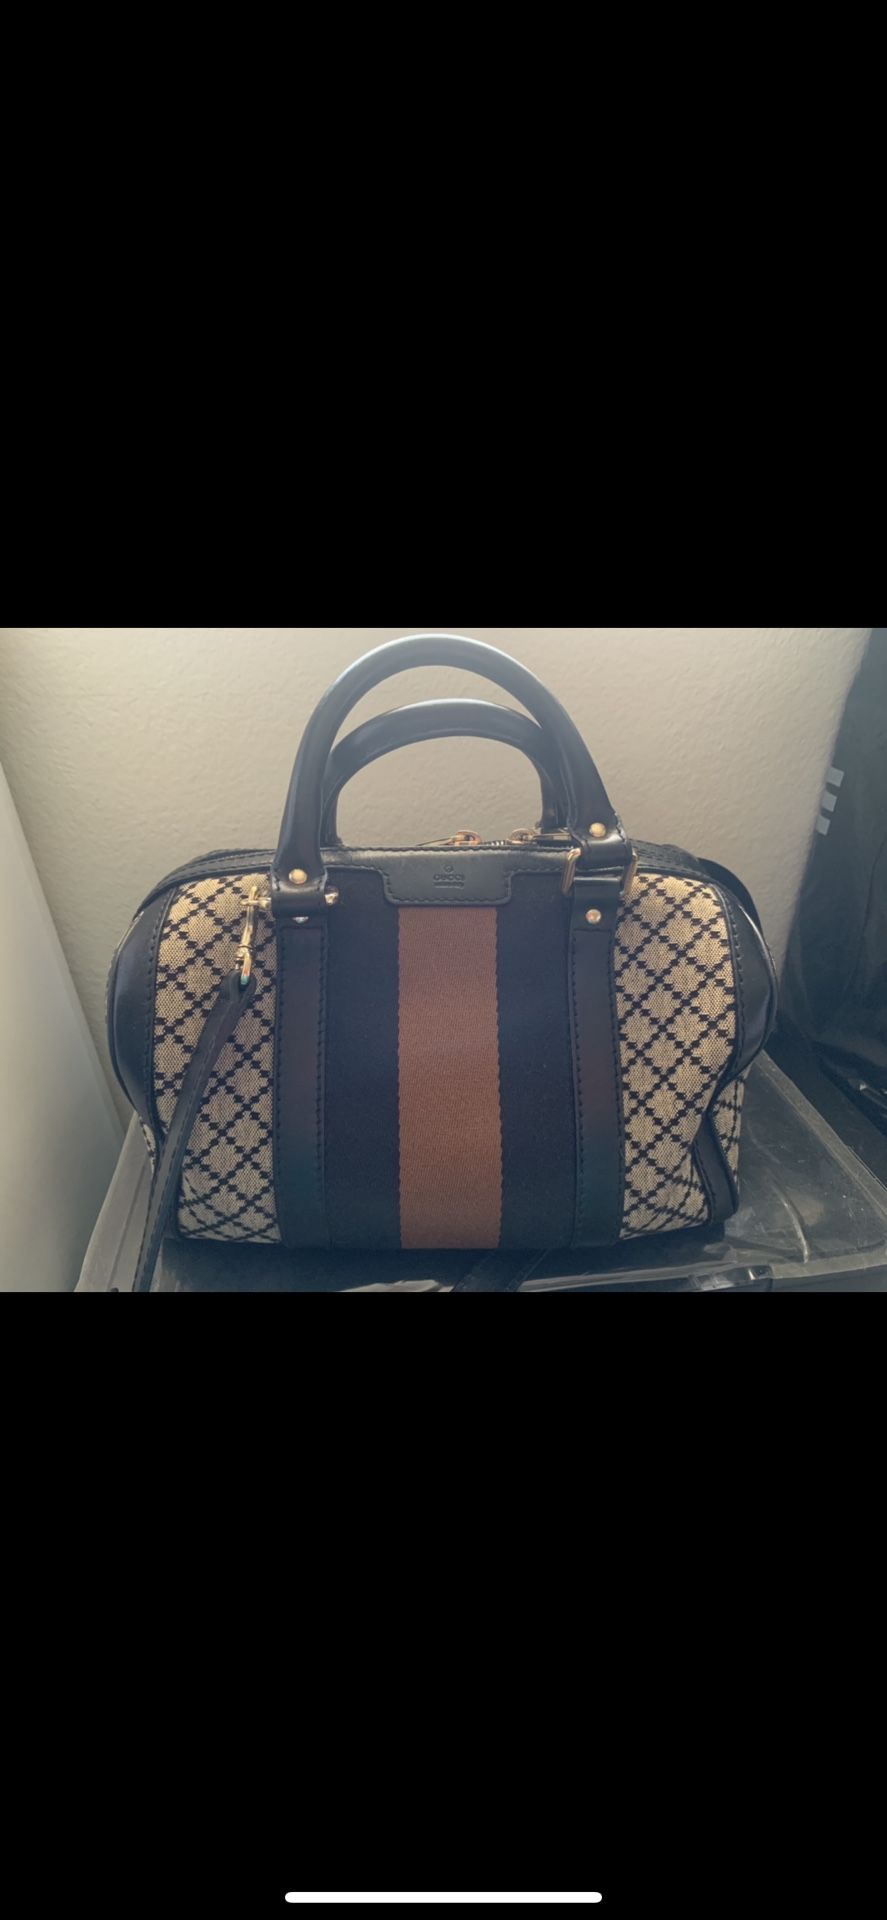 Gucci Diamante Boston Small Bag (authentic)